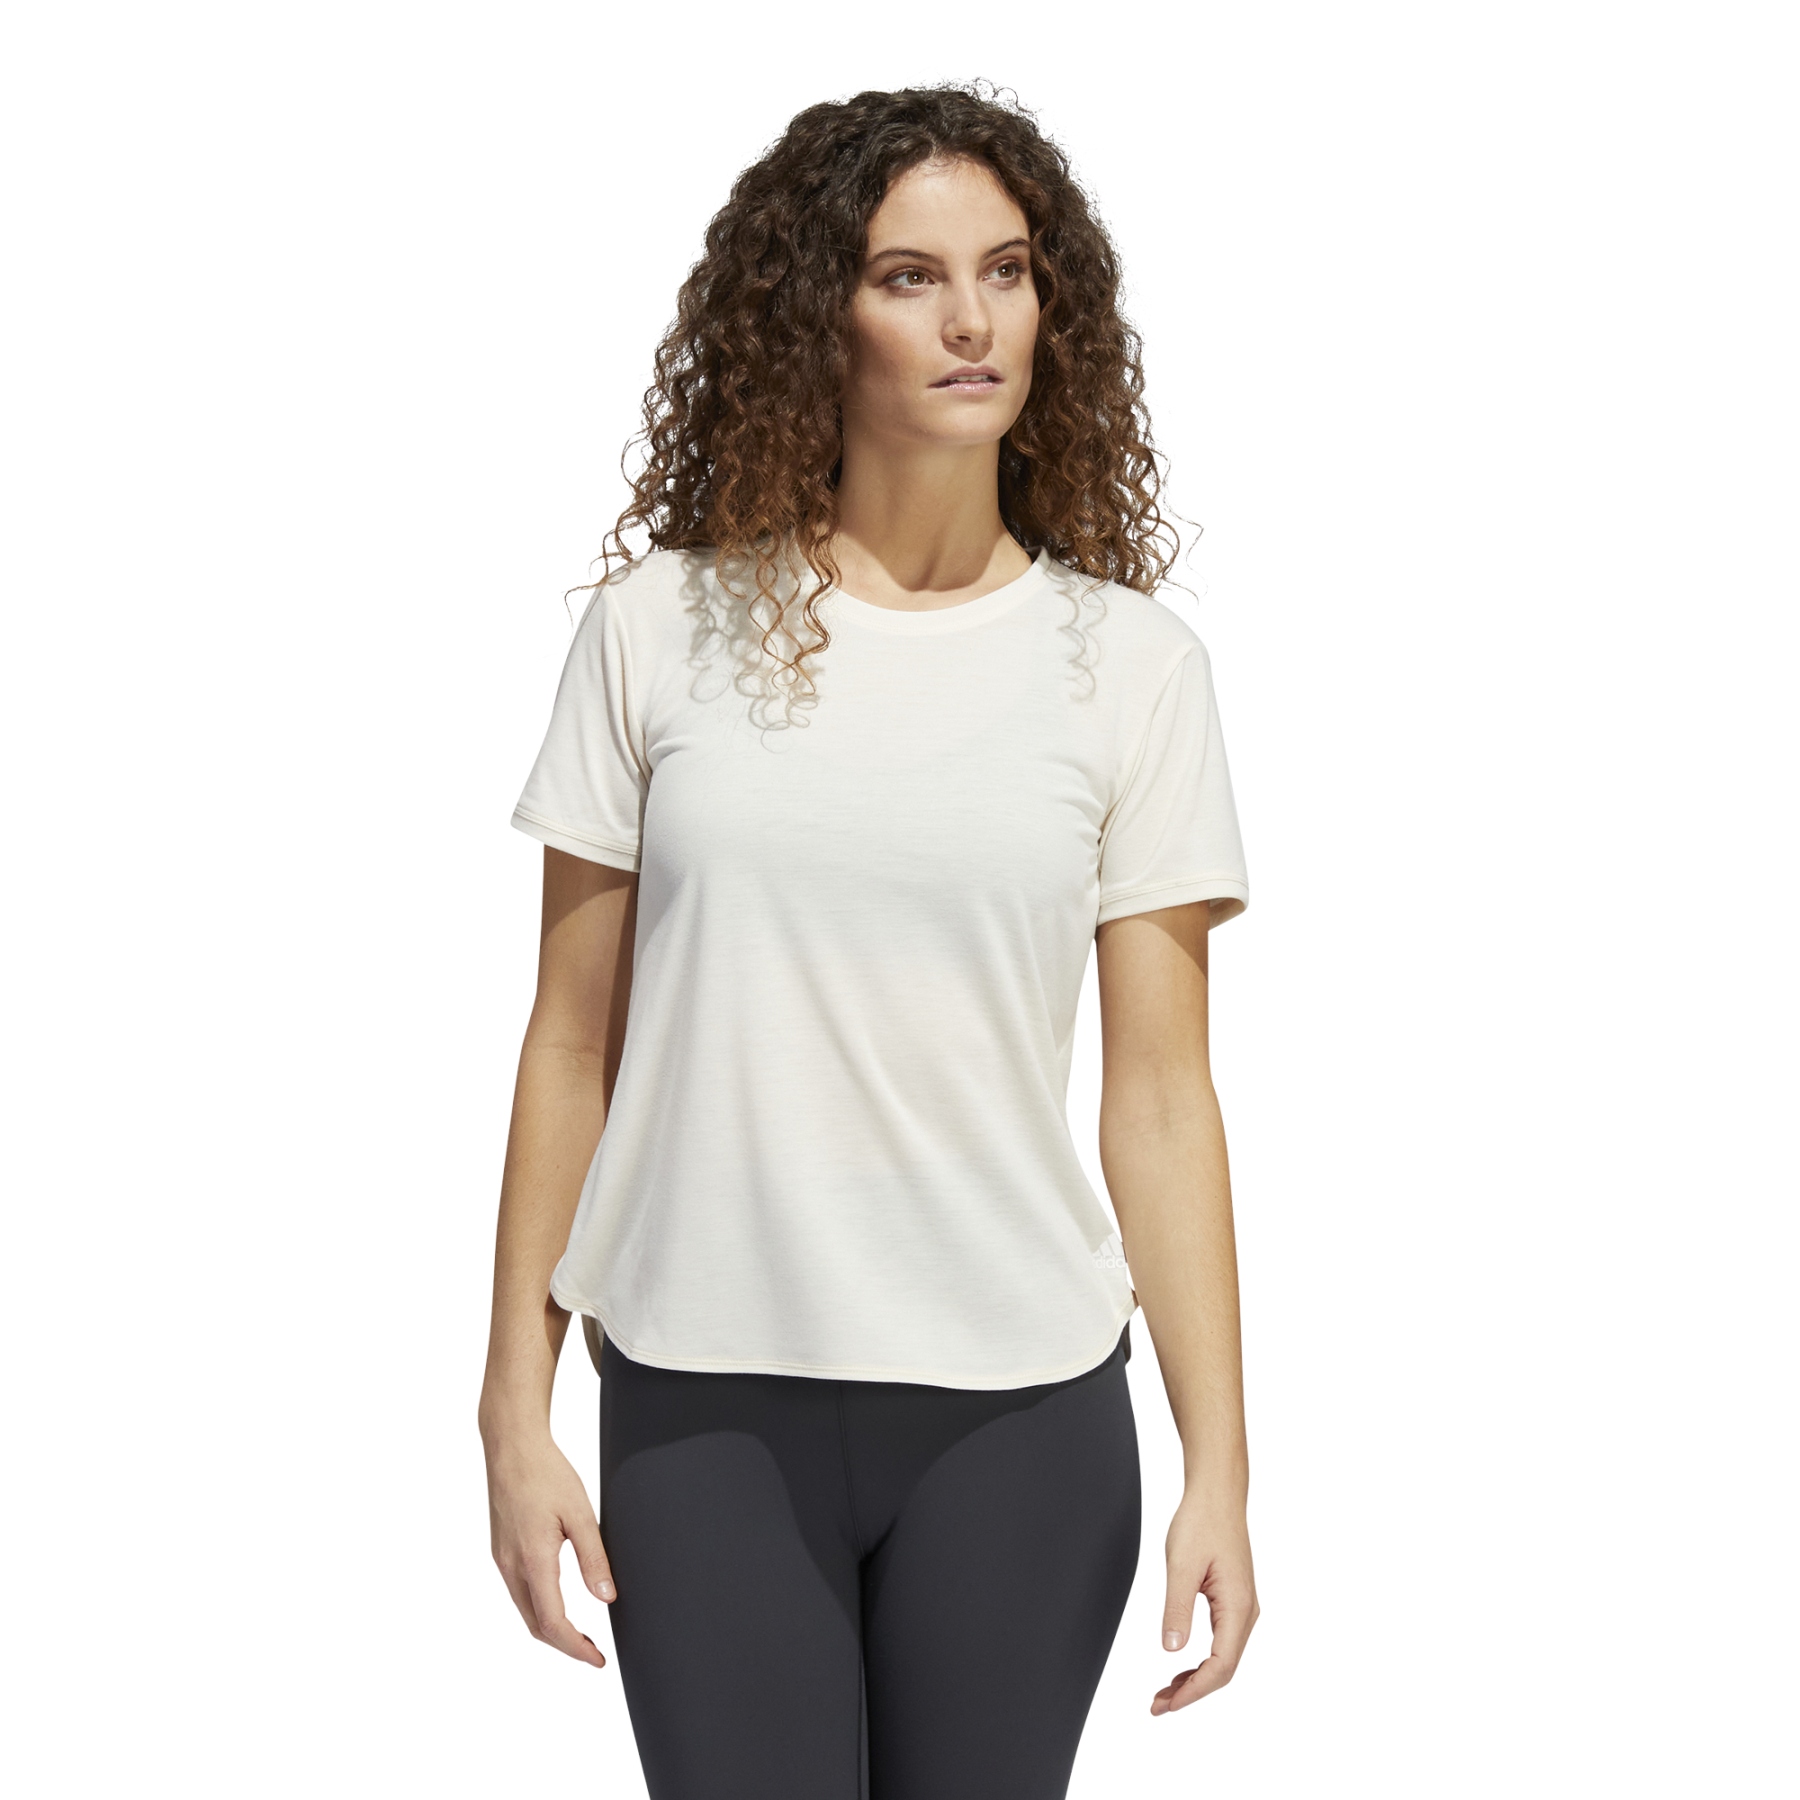 Produktbild von adidas Frauen Go To Kurzarmshirt 2.0 - wonder white/weiss HD9563